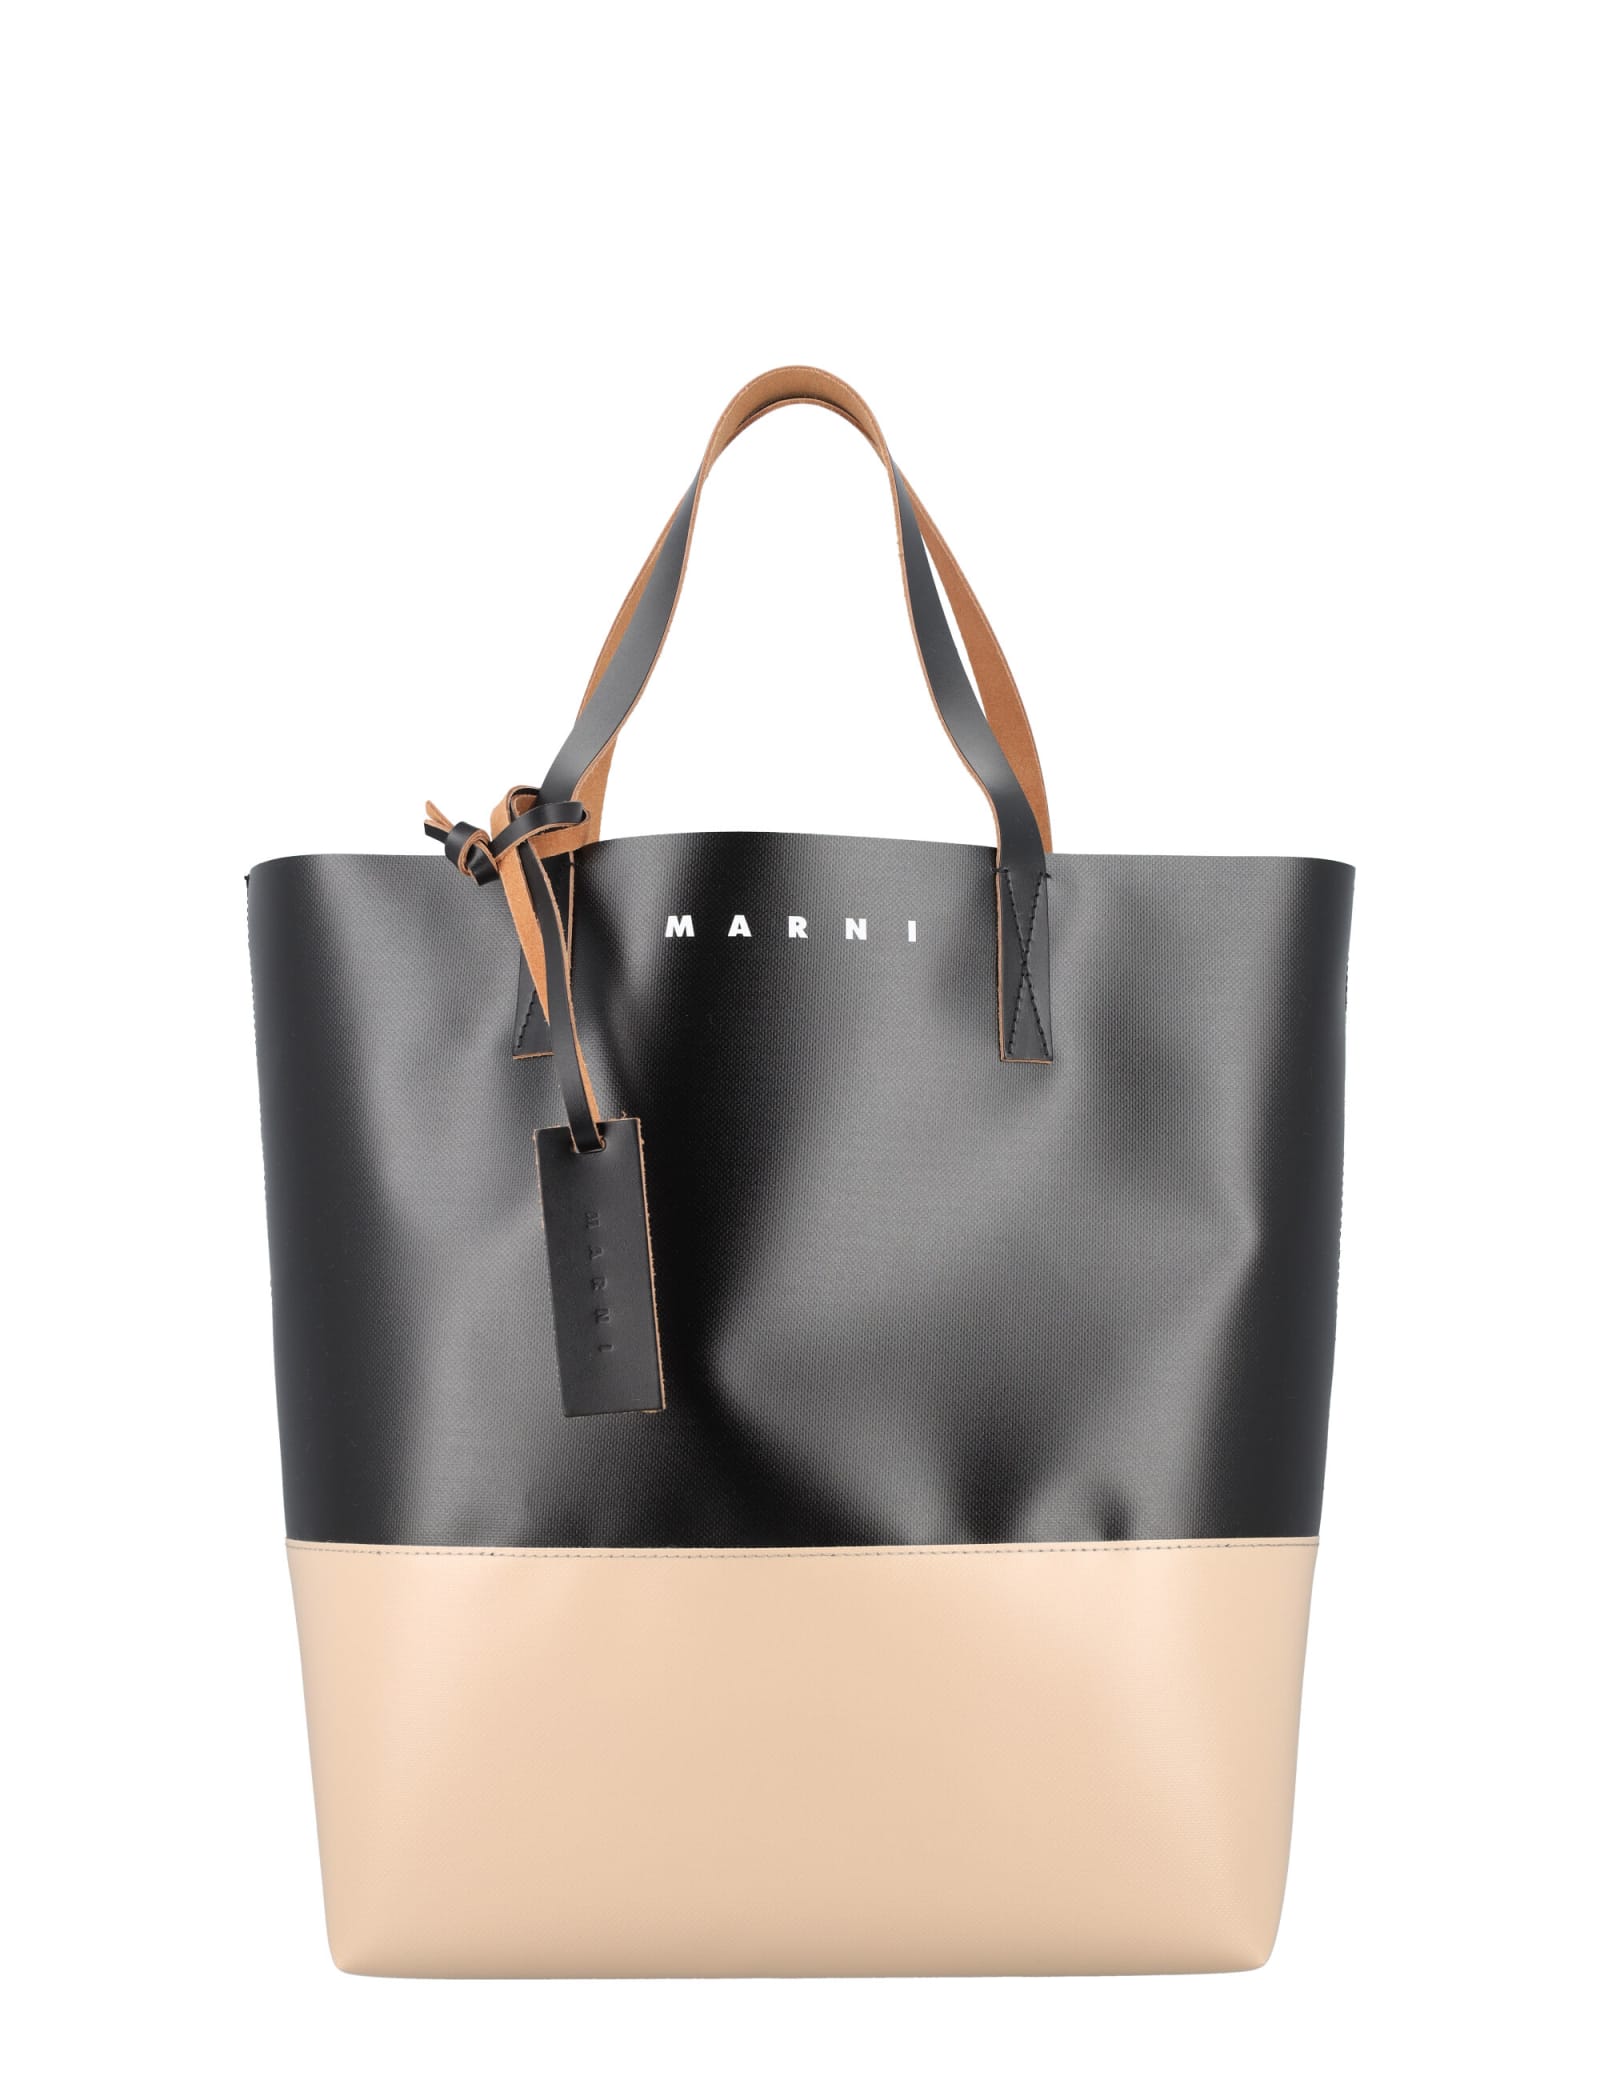 Marni Tribeca Shopping Bag In Black Cork